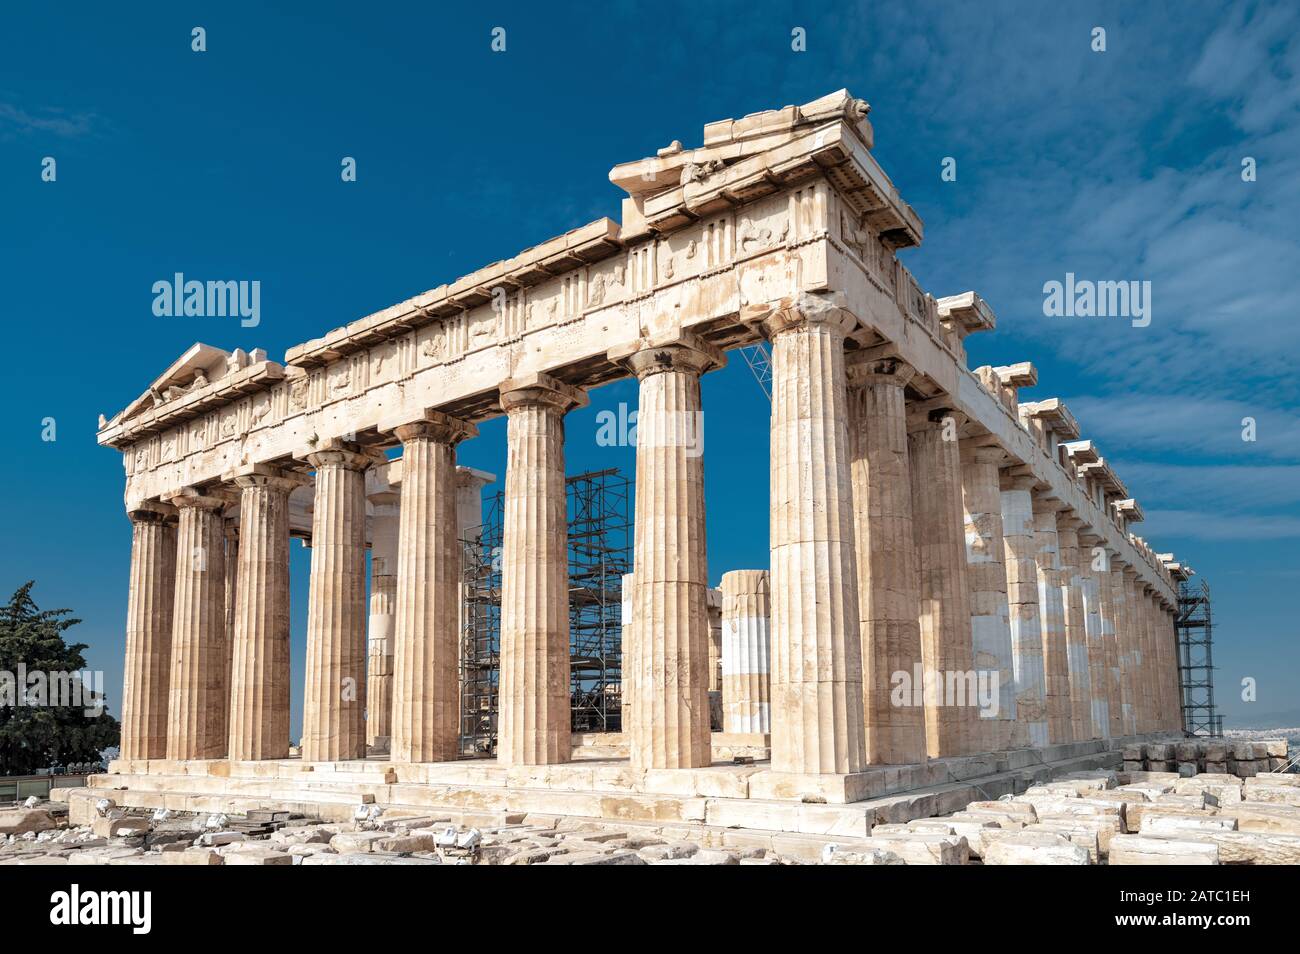 Parthénon sur l'Acropole, Athènes, Grèce. C'est la principale attraction touristique d'Athènes. Ruines du majestueux temple grec ancien dans le centre d'Athènes. Famille Banque D'Images